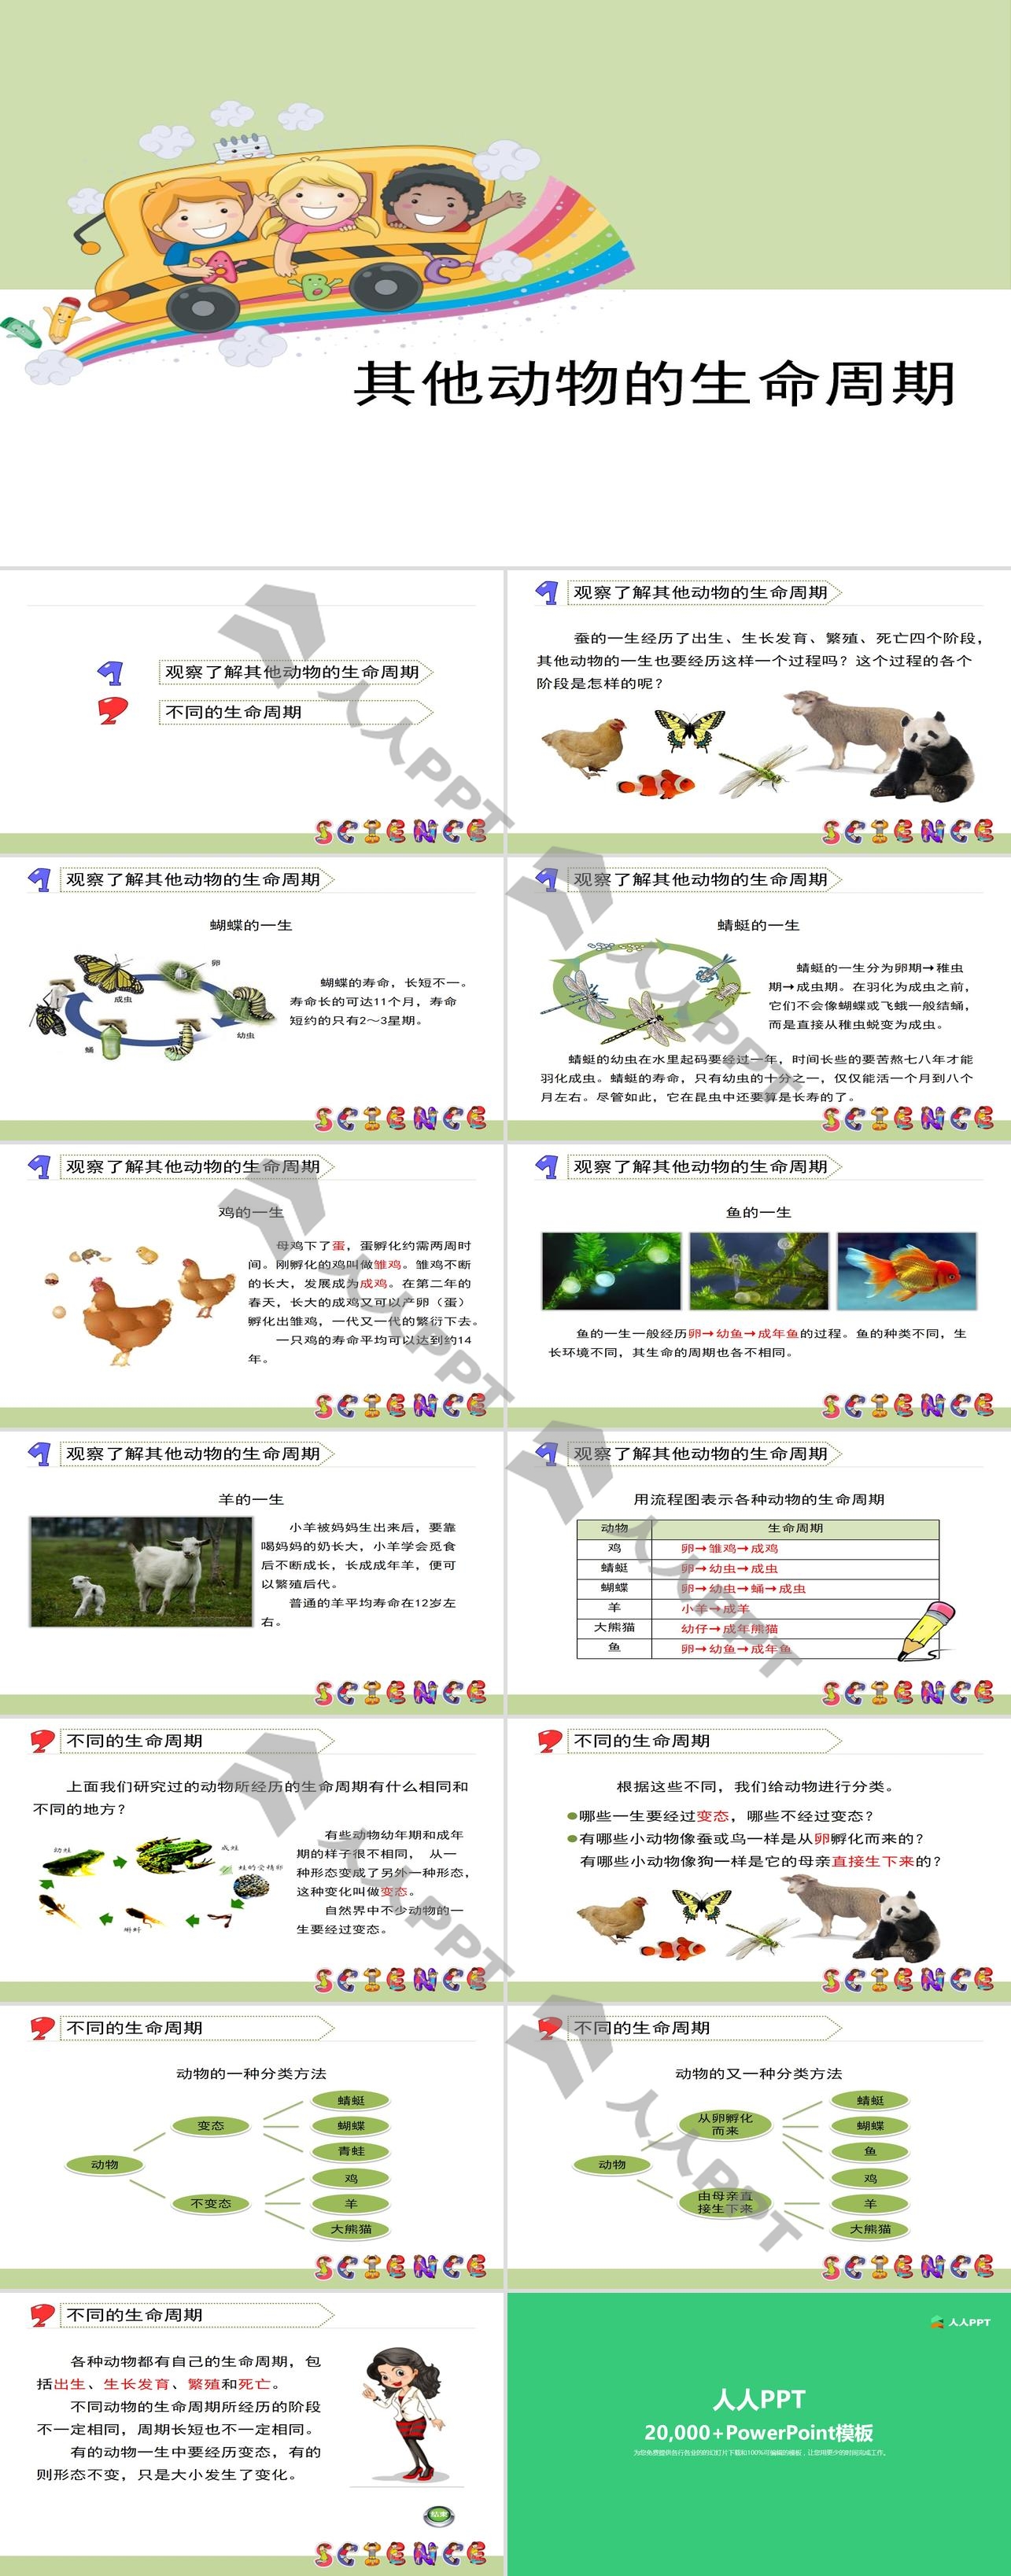 《其他动物的生命周期》动物的生命周期PPT长图